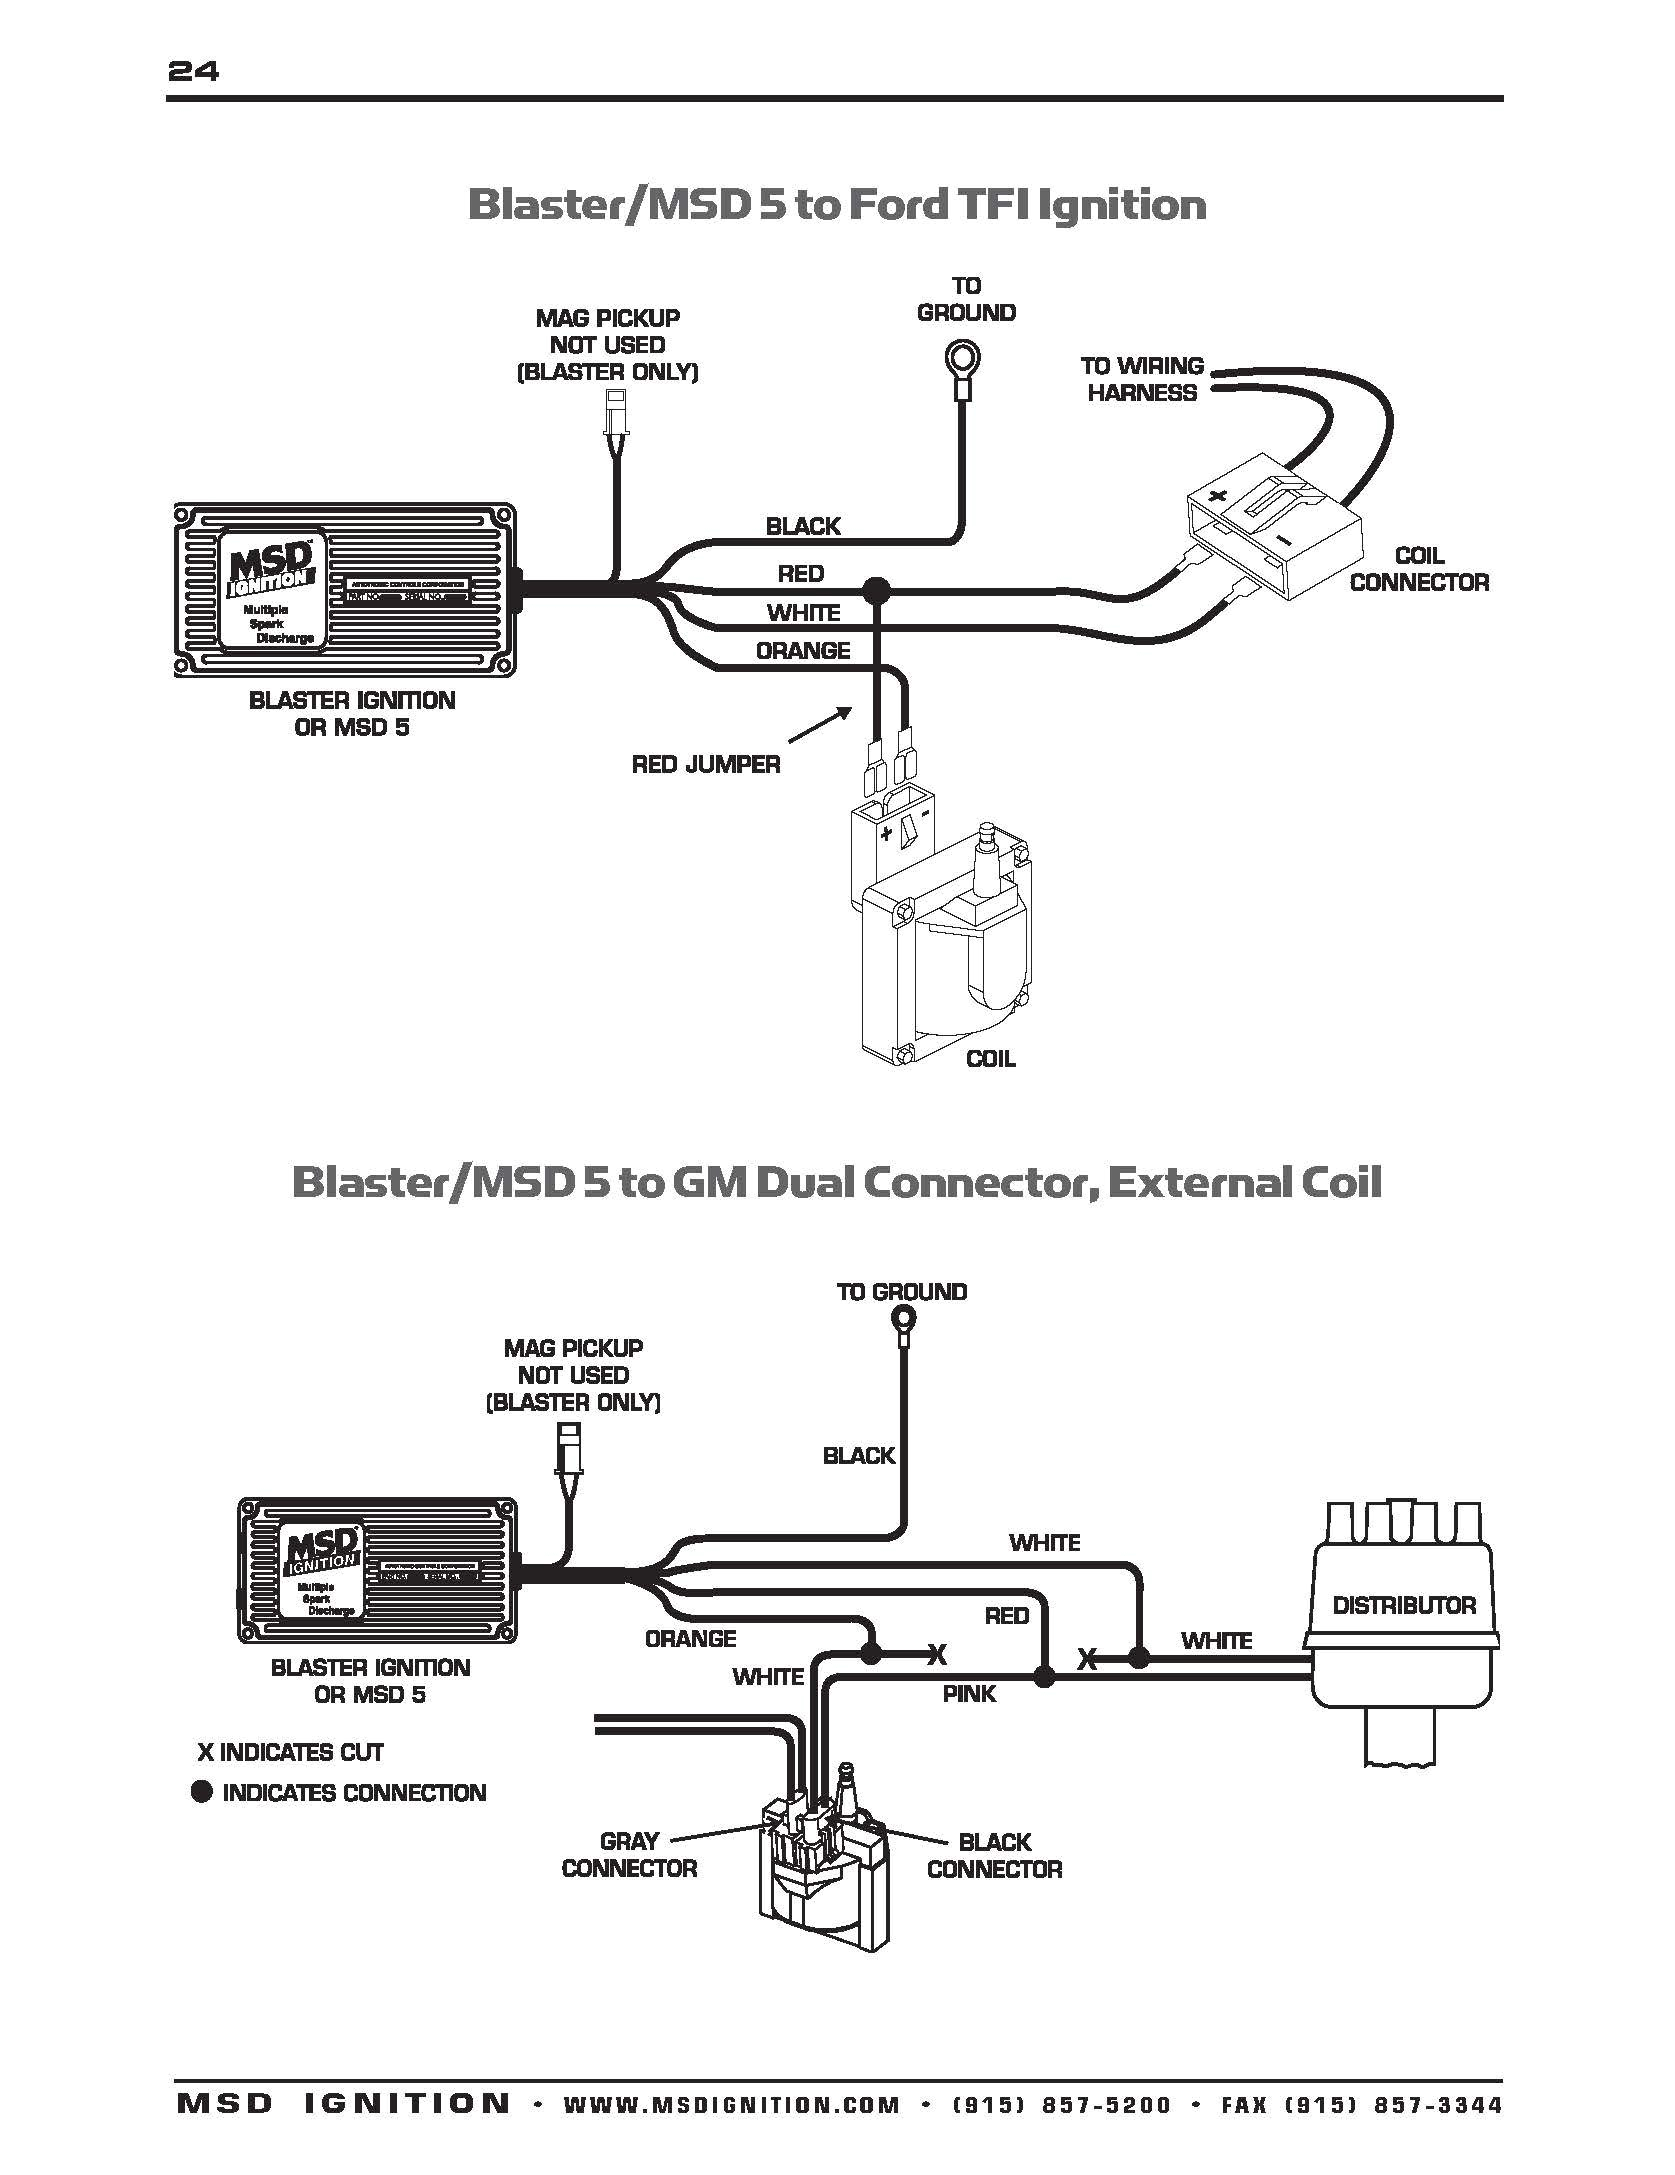 msd box wiring diagram basic electronics wiring diagram